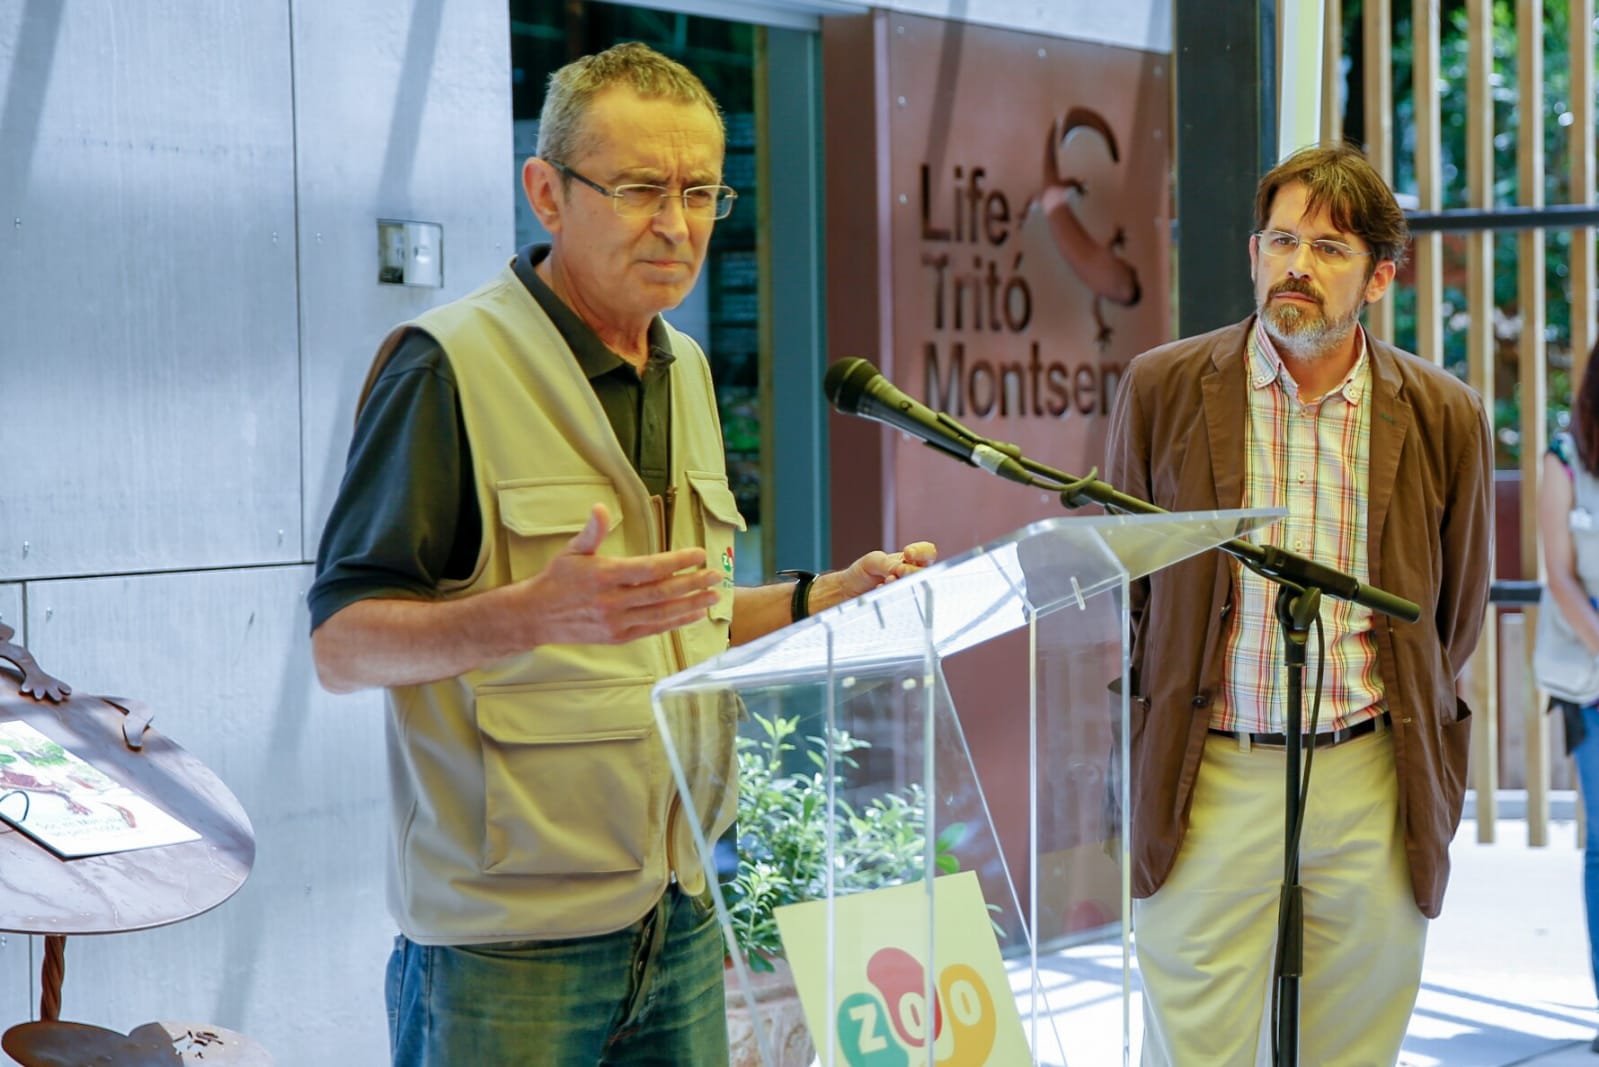 Inauguració Espai LIFE Tritó del Montseny